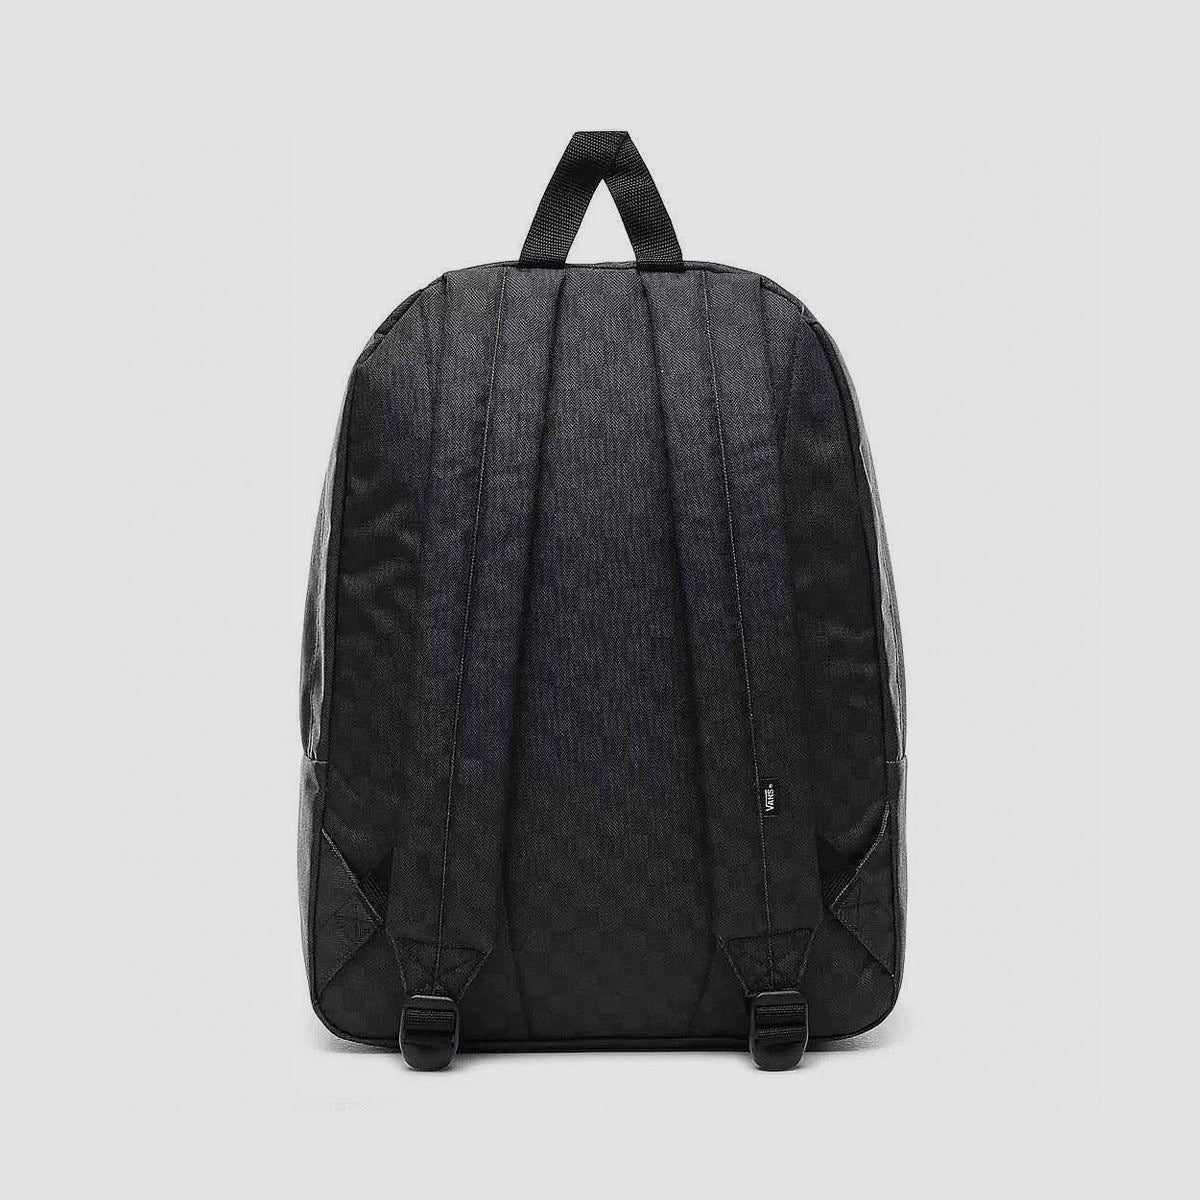 Vans Old Skool H2O Check Backpack Black/Charcoal